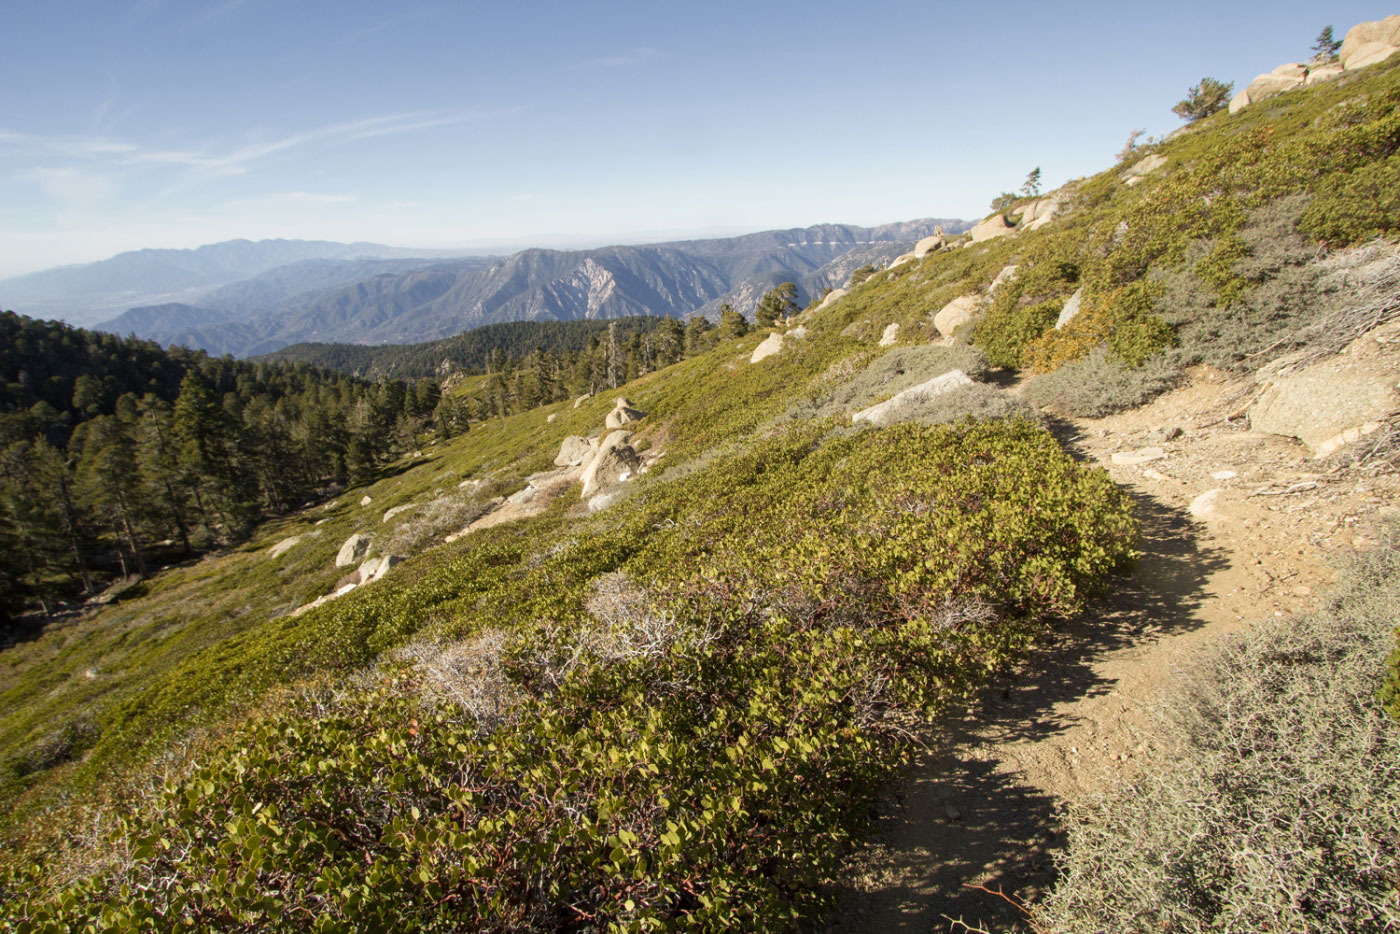 Hike Anderson Peak and San Bernardino Peak via Forsee Loop in San Bernardino National Forest, California - Stav is Lost